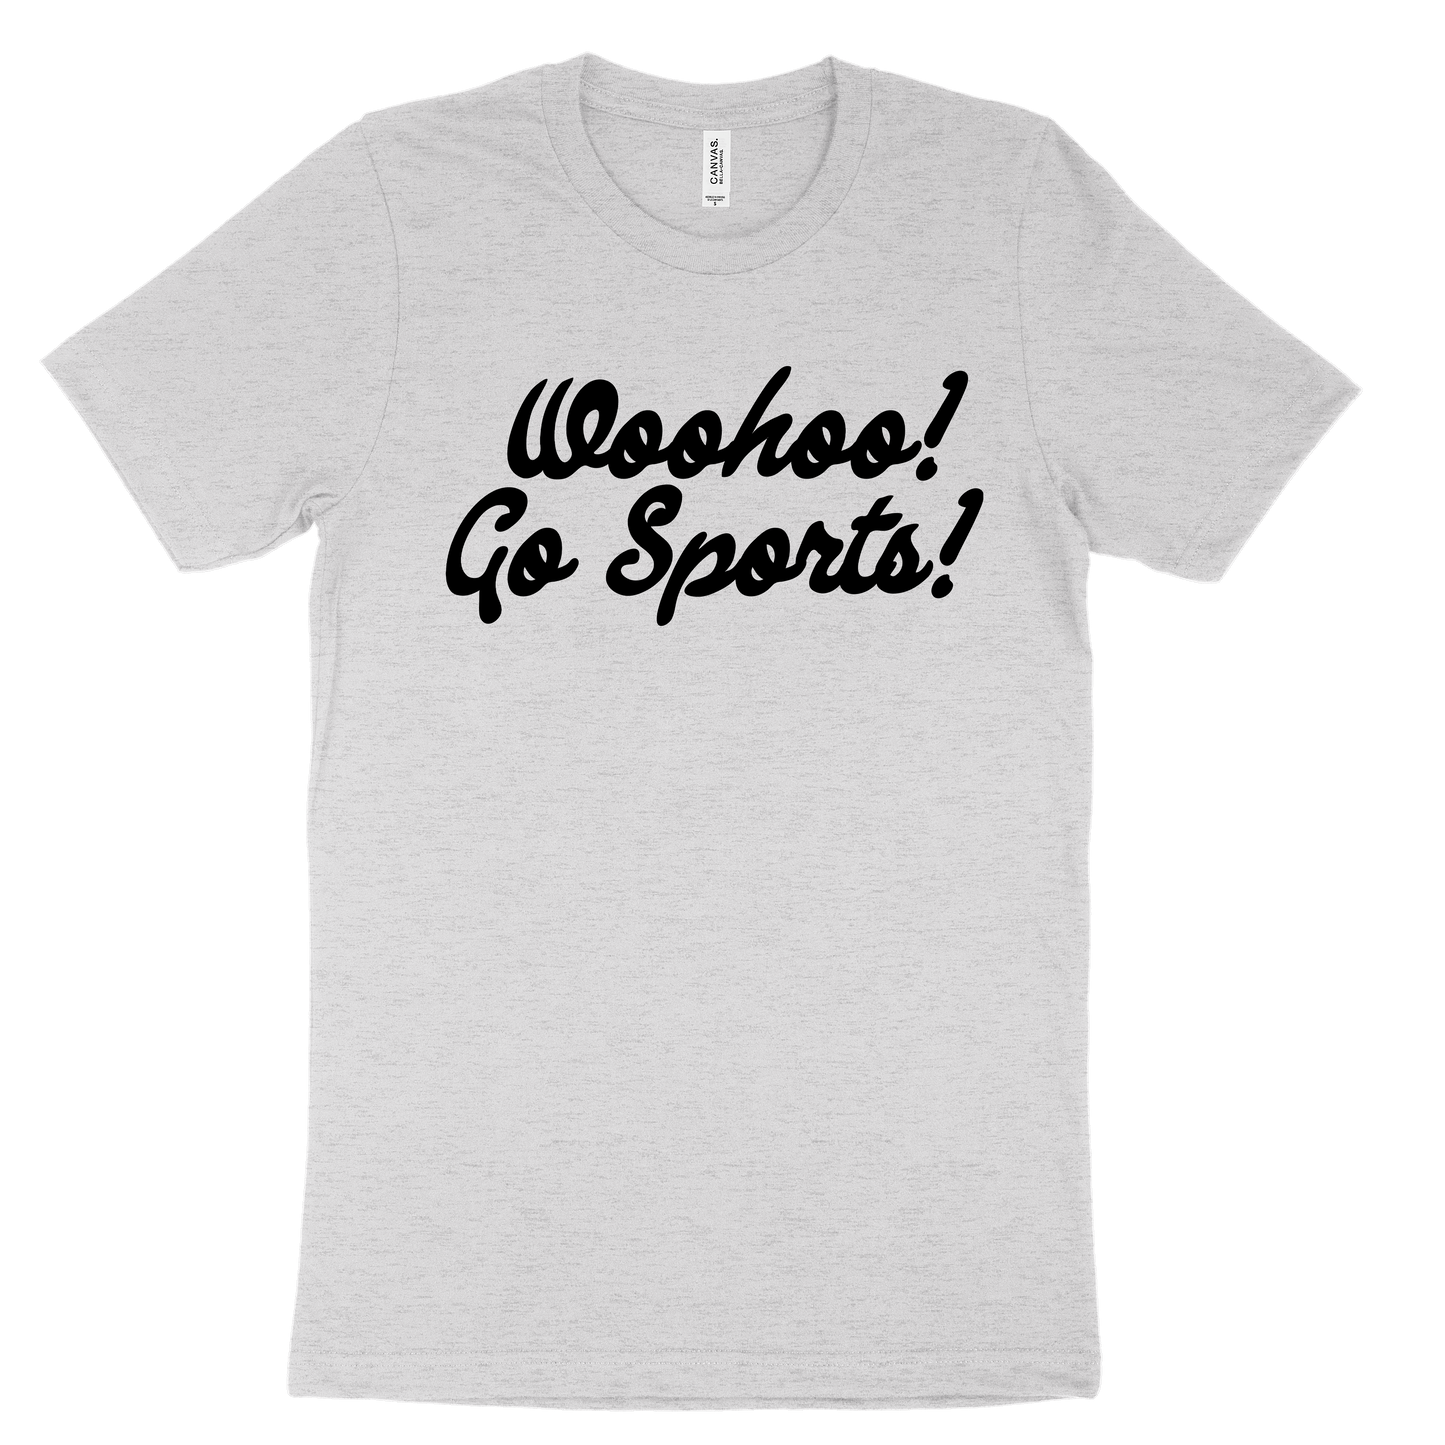 Woohoo! Go Sports! Tee - Grey